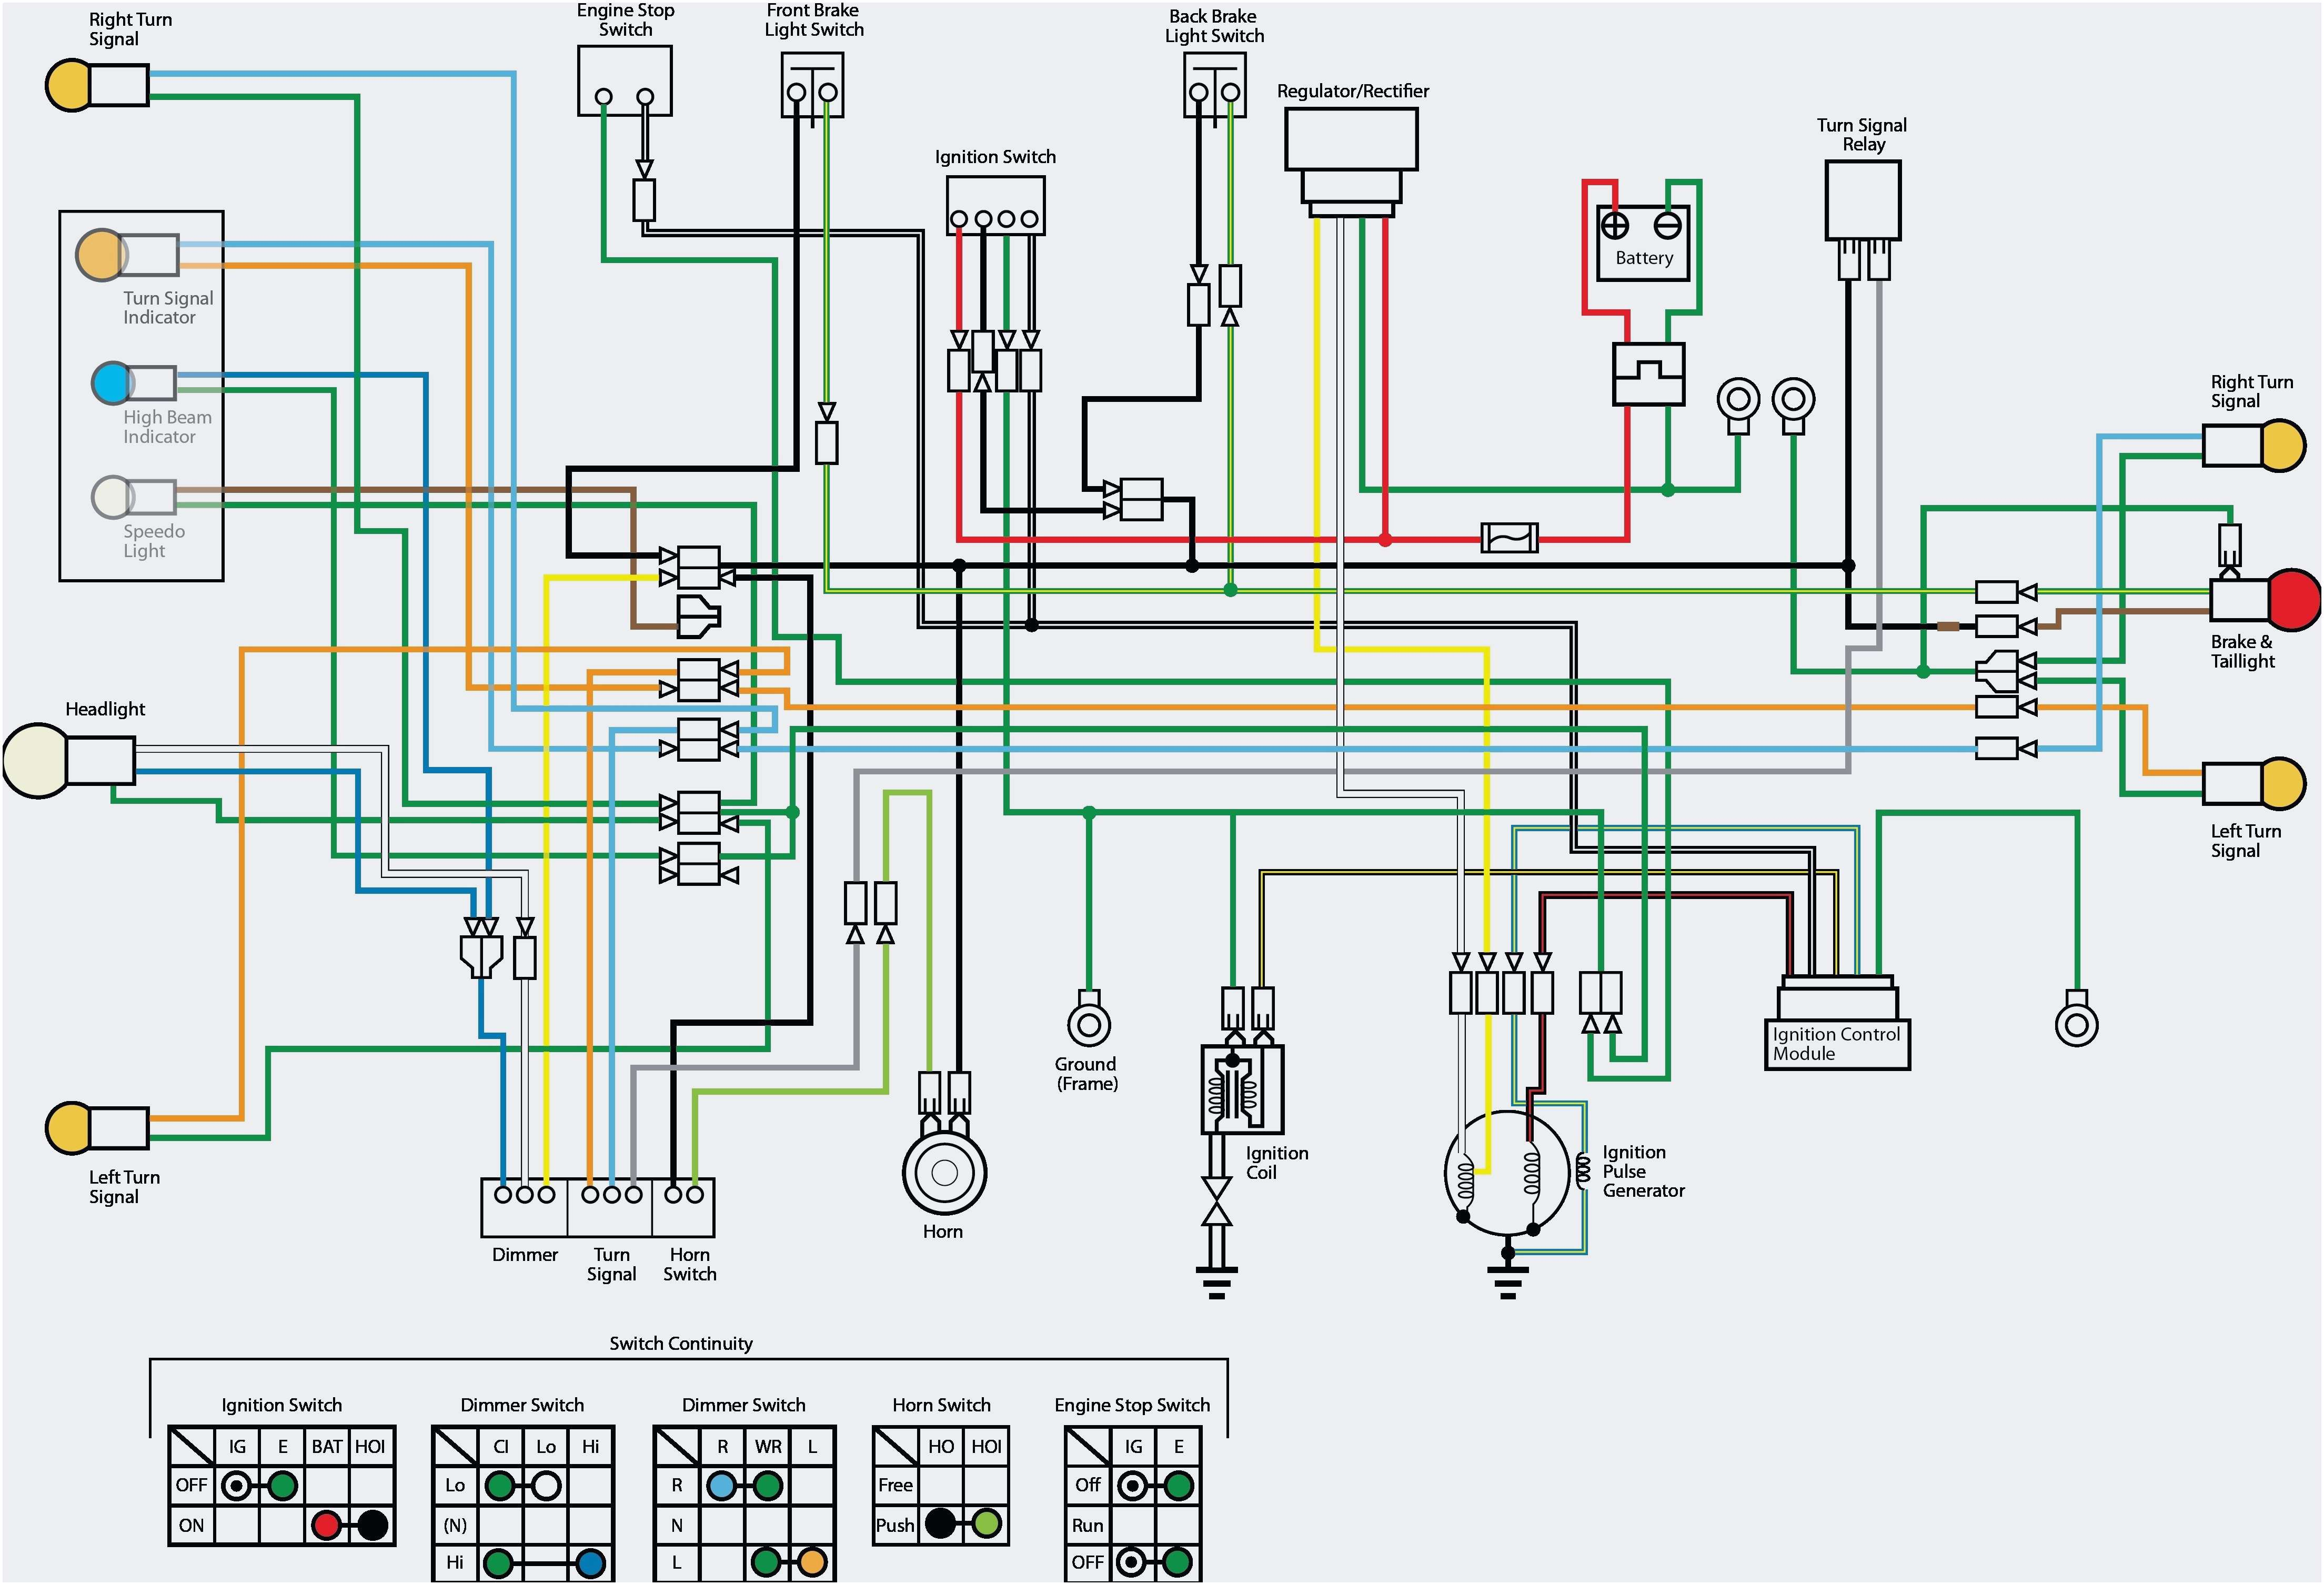 Brake Light Switch Wiring Diagram - Database - Wiring Diagram Sample